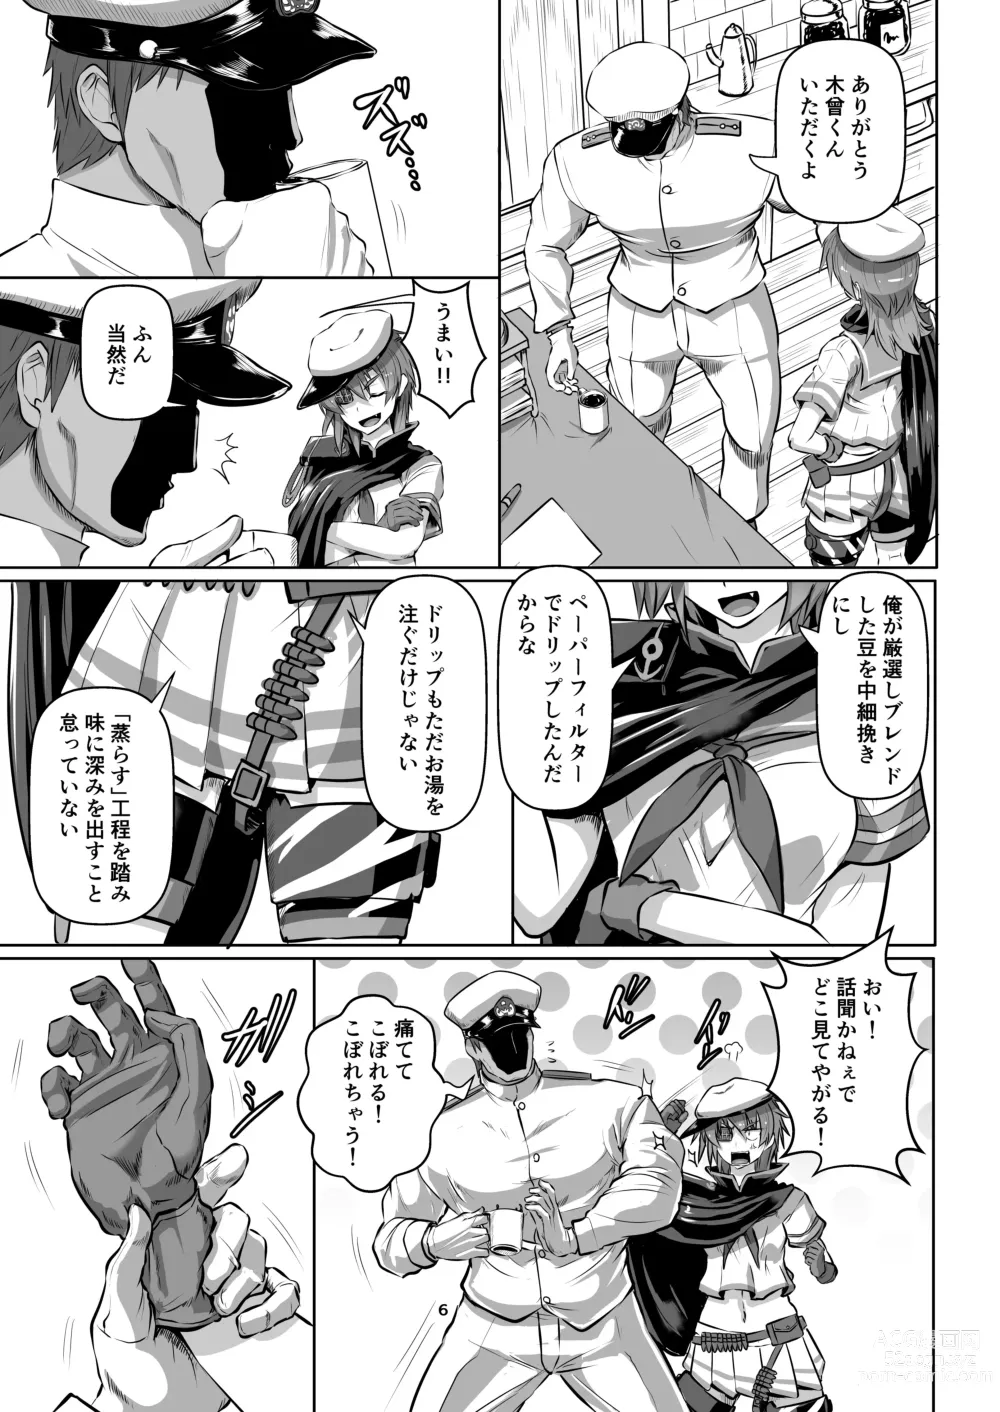 Page 6 of doujinshi Shibarare, kakoma re, sosoga rete...